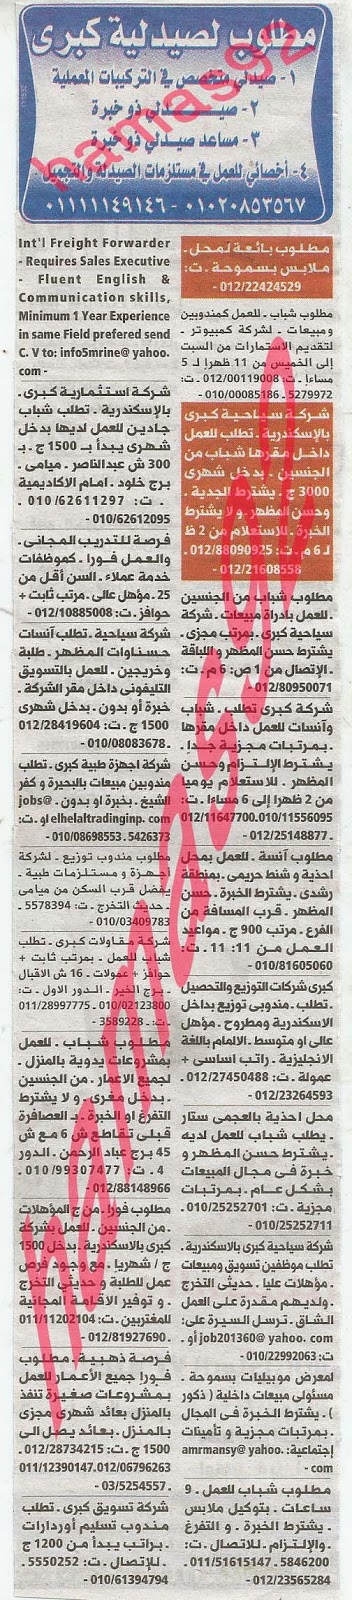 وظائف خالية من جريدة الوسيط الاسكندرية الثلاثاء 01-10-2013 %D9%88+%D8%B3+%D8%B3+8